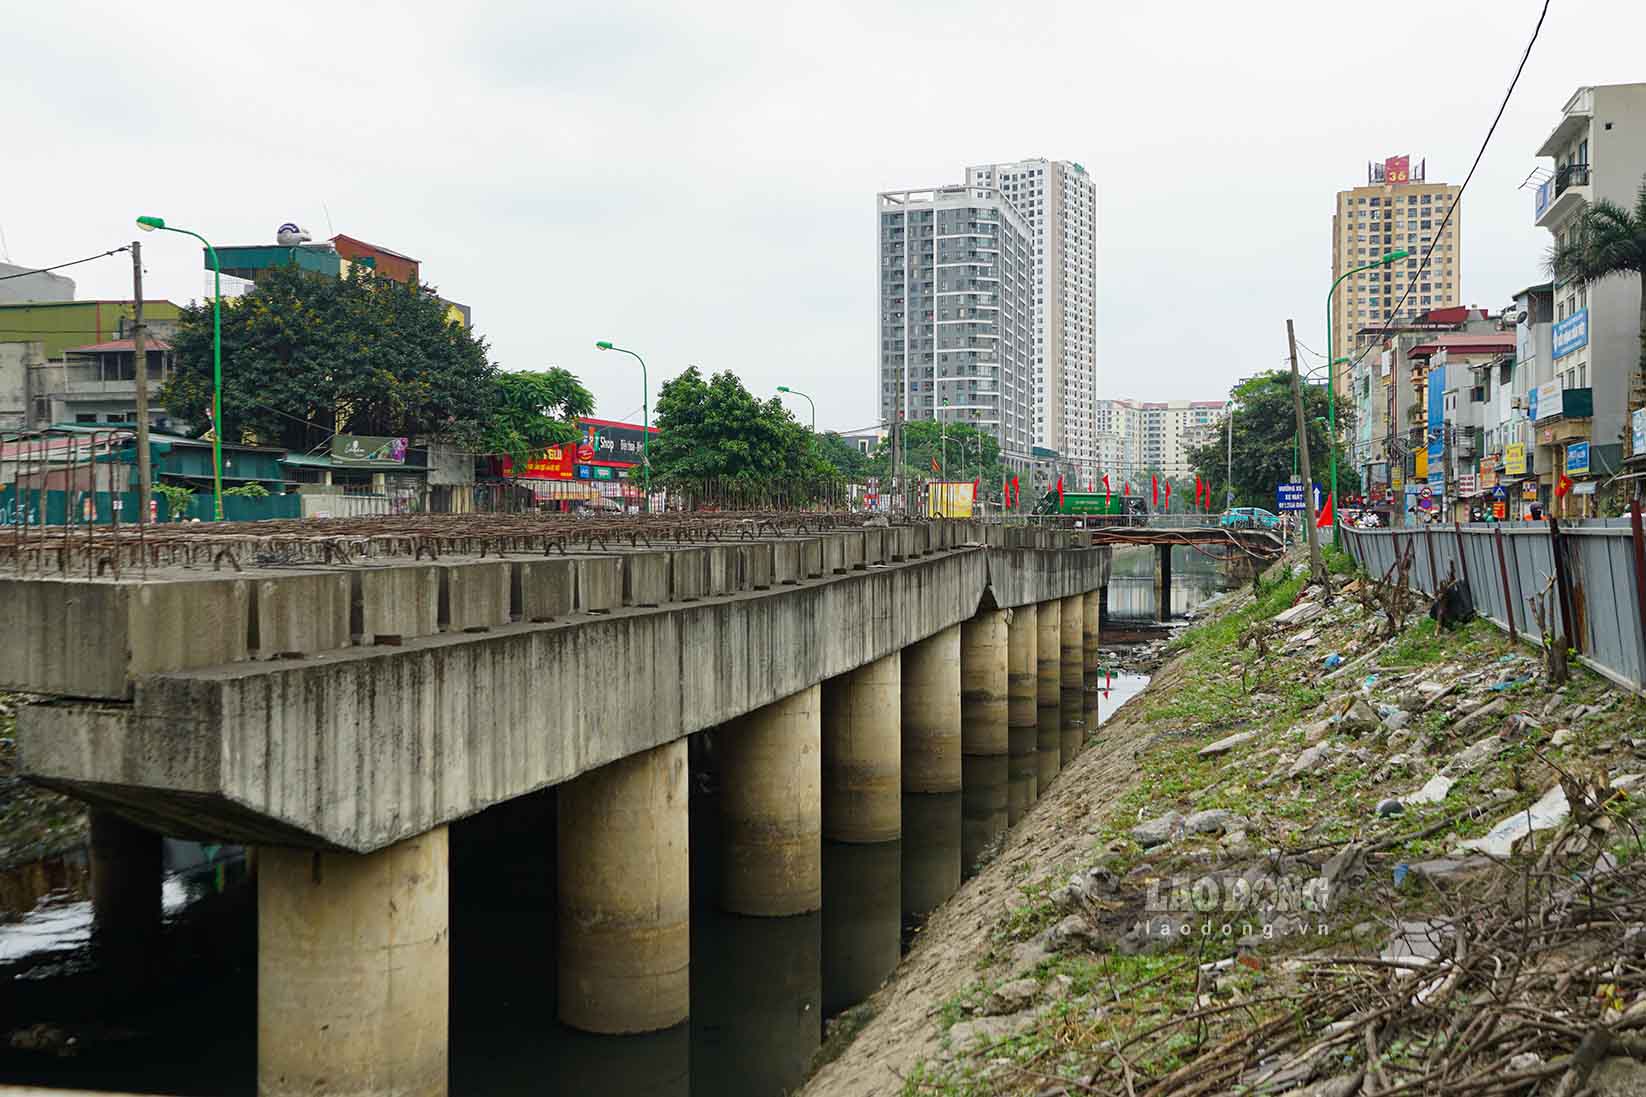 Dự án có một cây cầu bắc qua sông Lừ đoạn qua phường Định Công, dù cây cầu này đã hoàn thiện phần chân đế, nhưng không thể hoàn thiện tiếp do không có mặt bằng để kết nối.